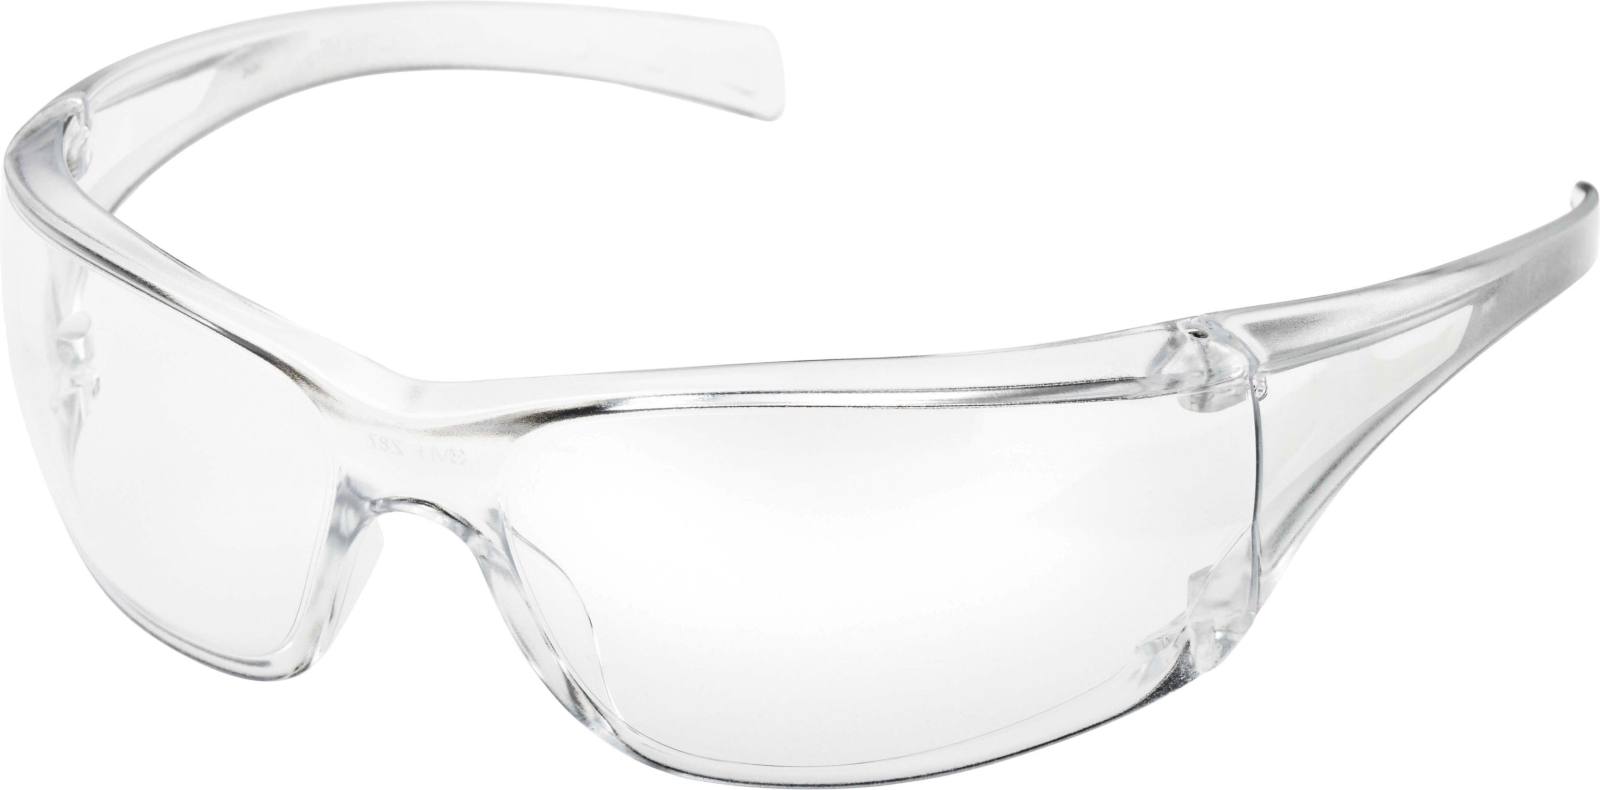 3M Virtua AF safety spectacles, anti-scratch/anti-fog coating, grey lens, 715002AF